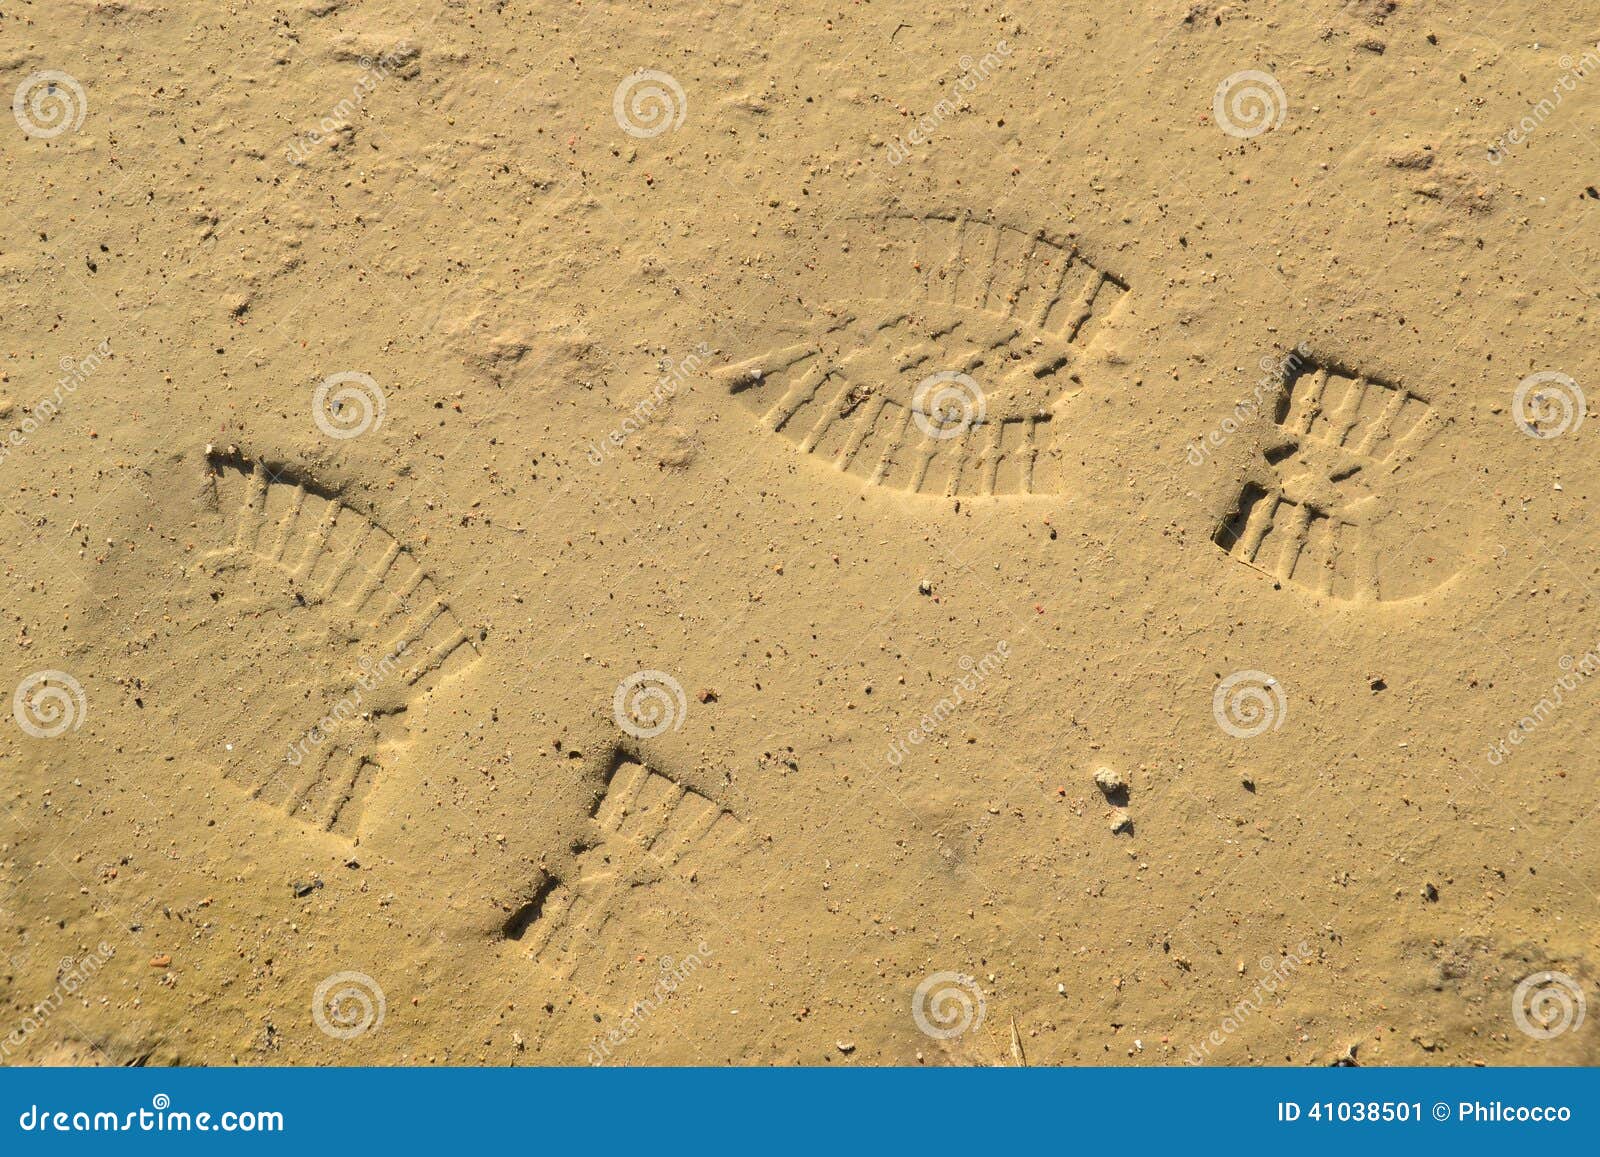 footprints on the mud